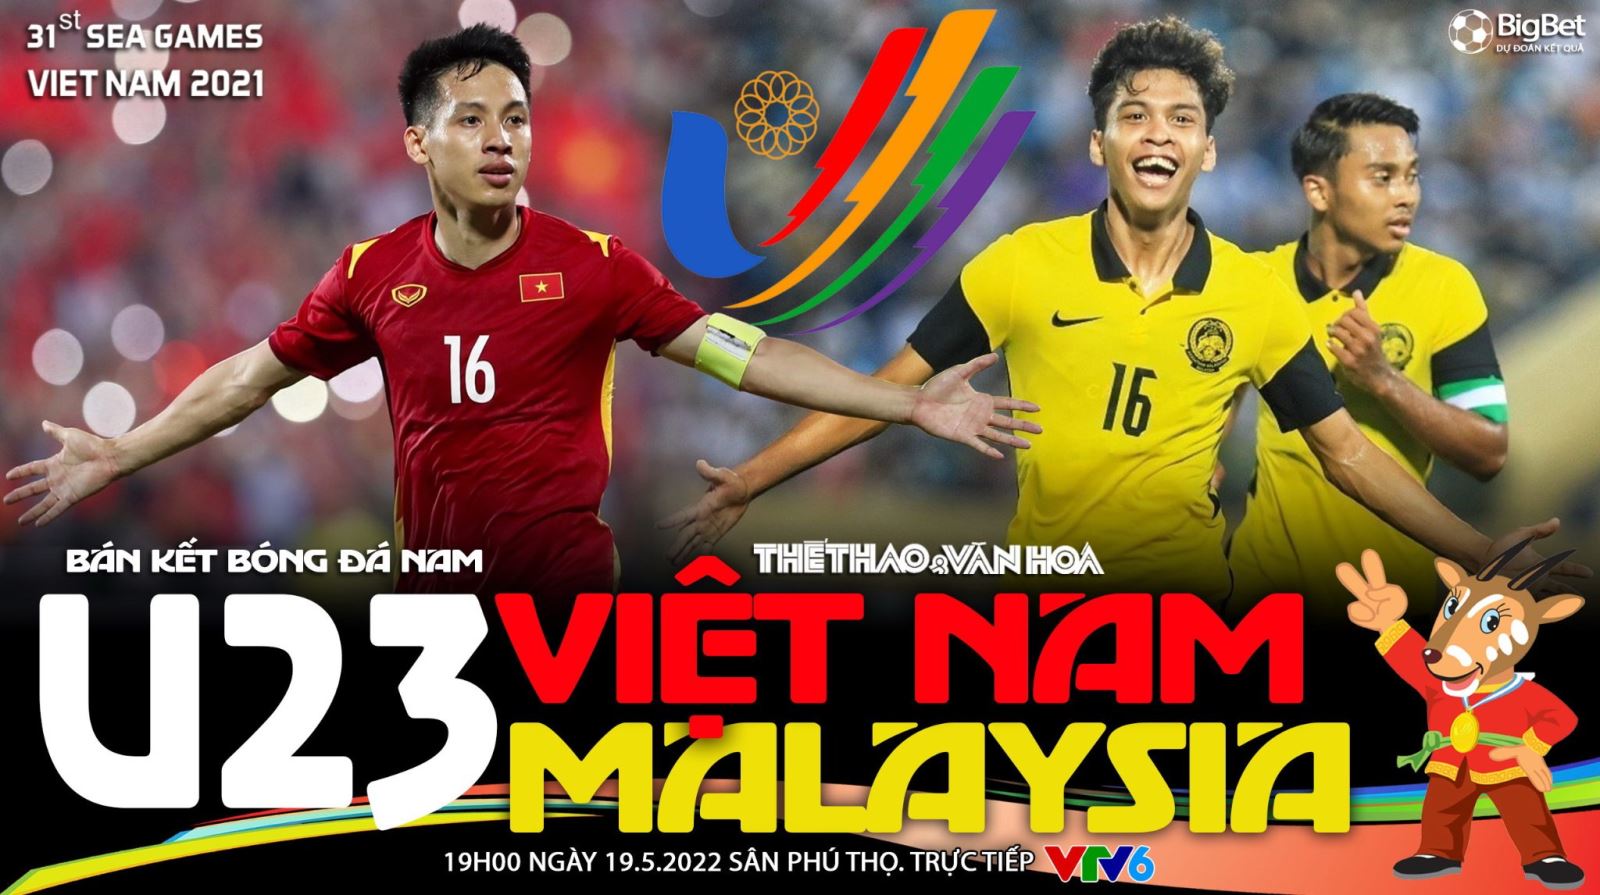 Soi Kèo Nhà Cái U23 Việt Nam Vs U23 Malaysia. Vtv6 Trực Tiếp Bóng đá Sea Games 31 (19h00, 19/5) 6285b5df6be76.jpeg